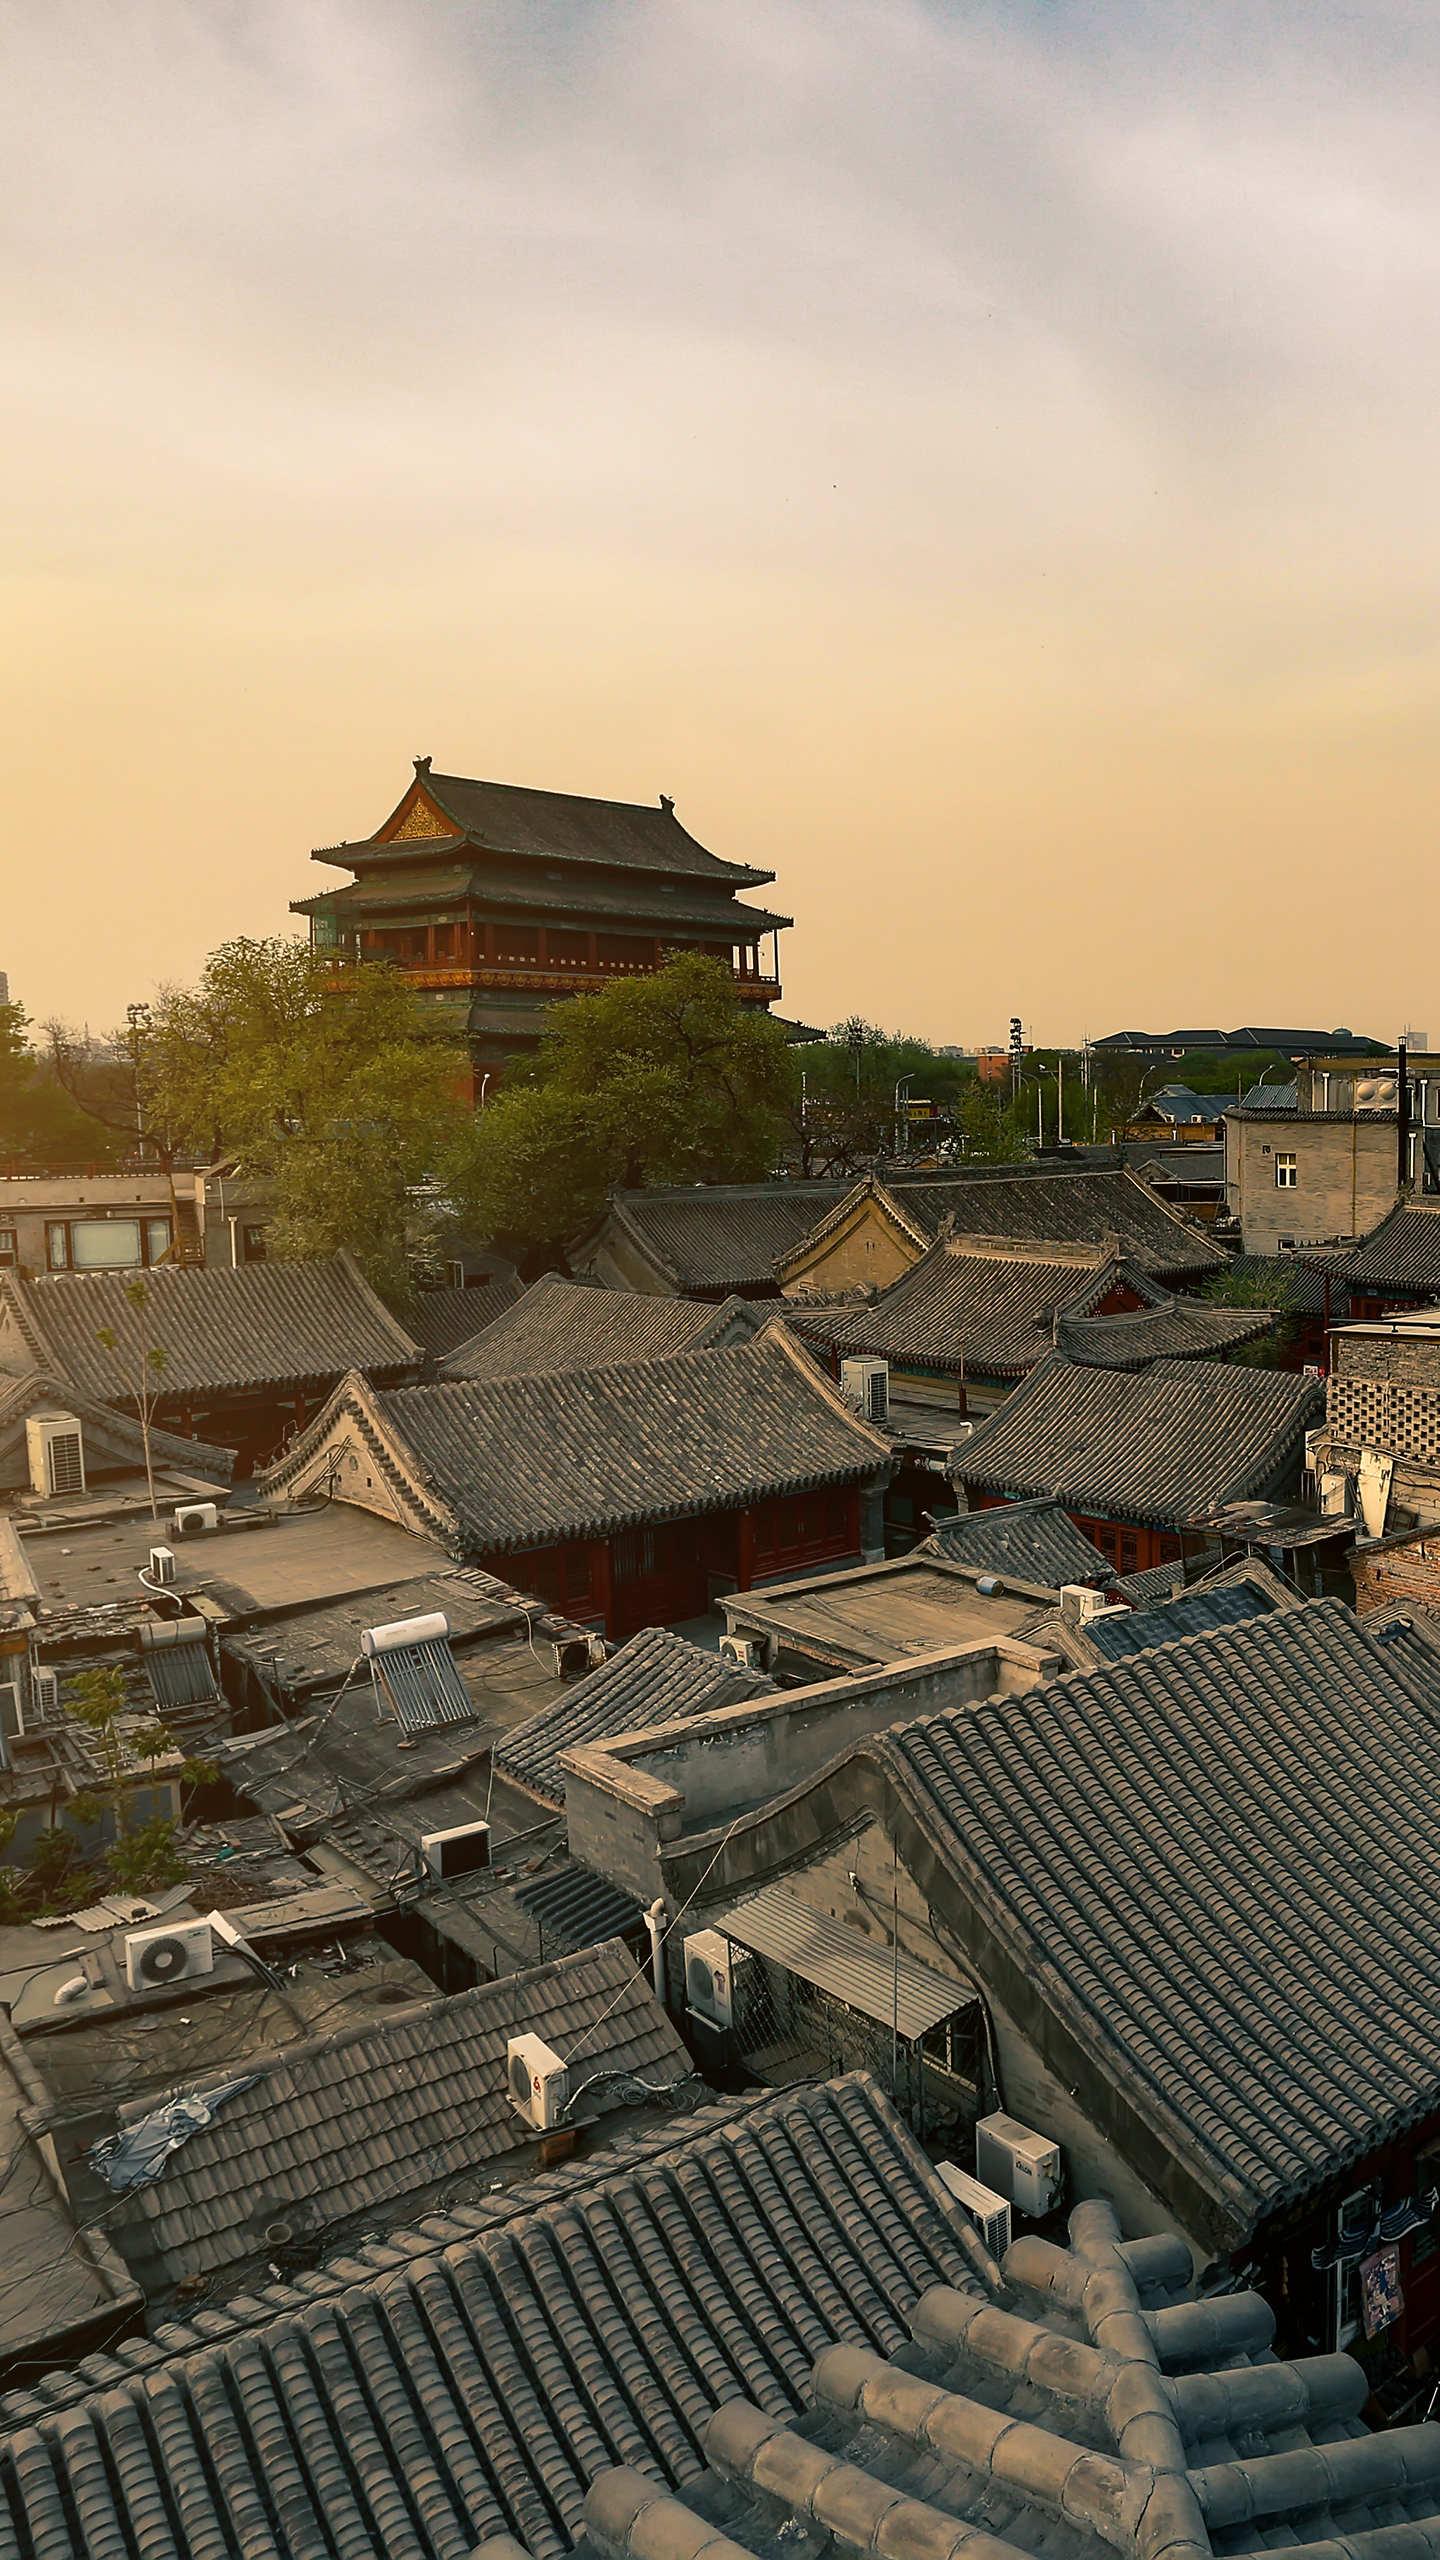 鼓楼夕阳—华为杂志锁屏坐落在北京市南北中轴线的古代建筑,两旁分布